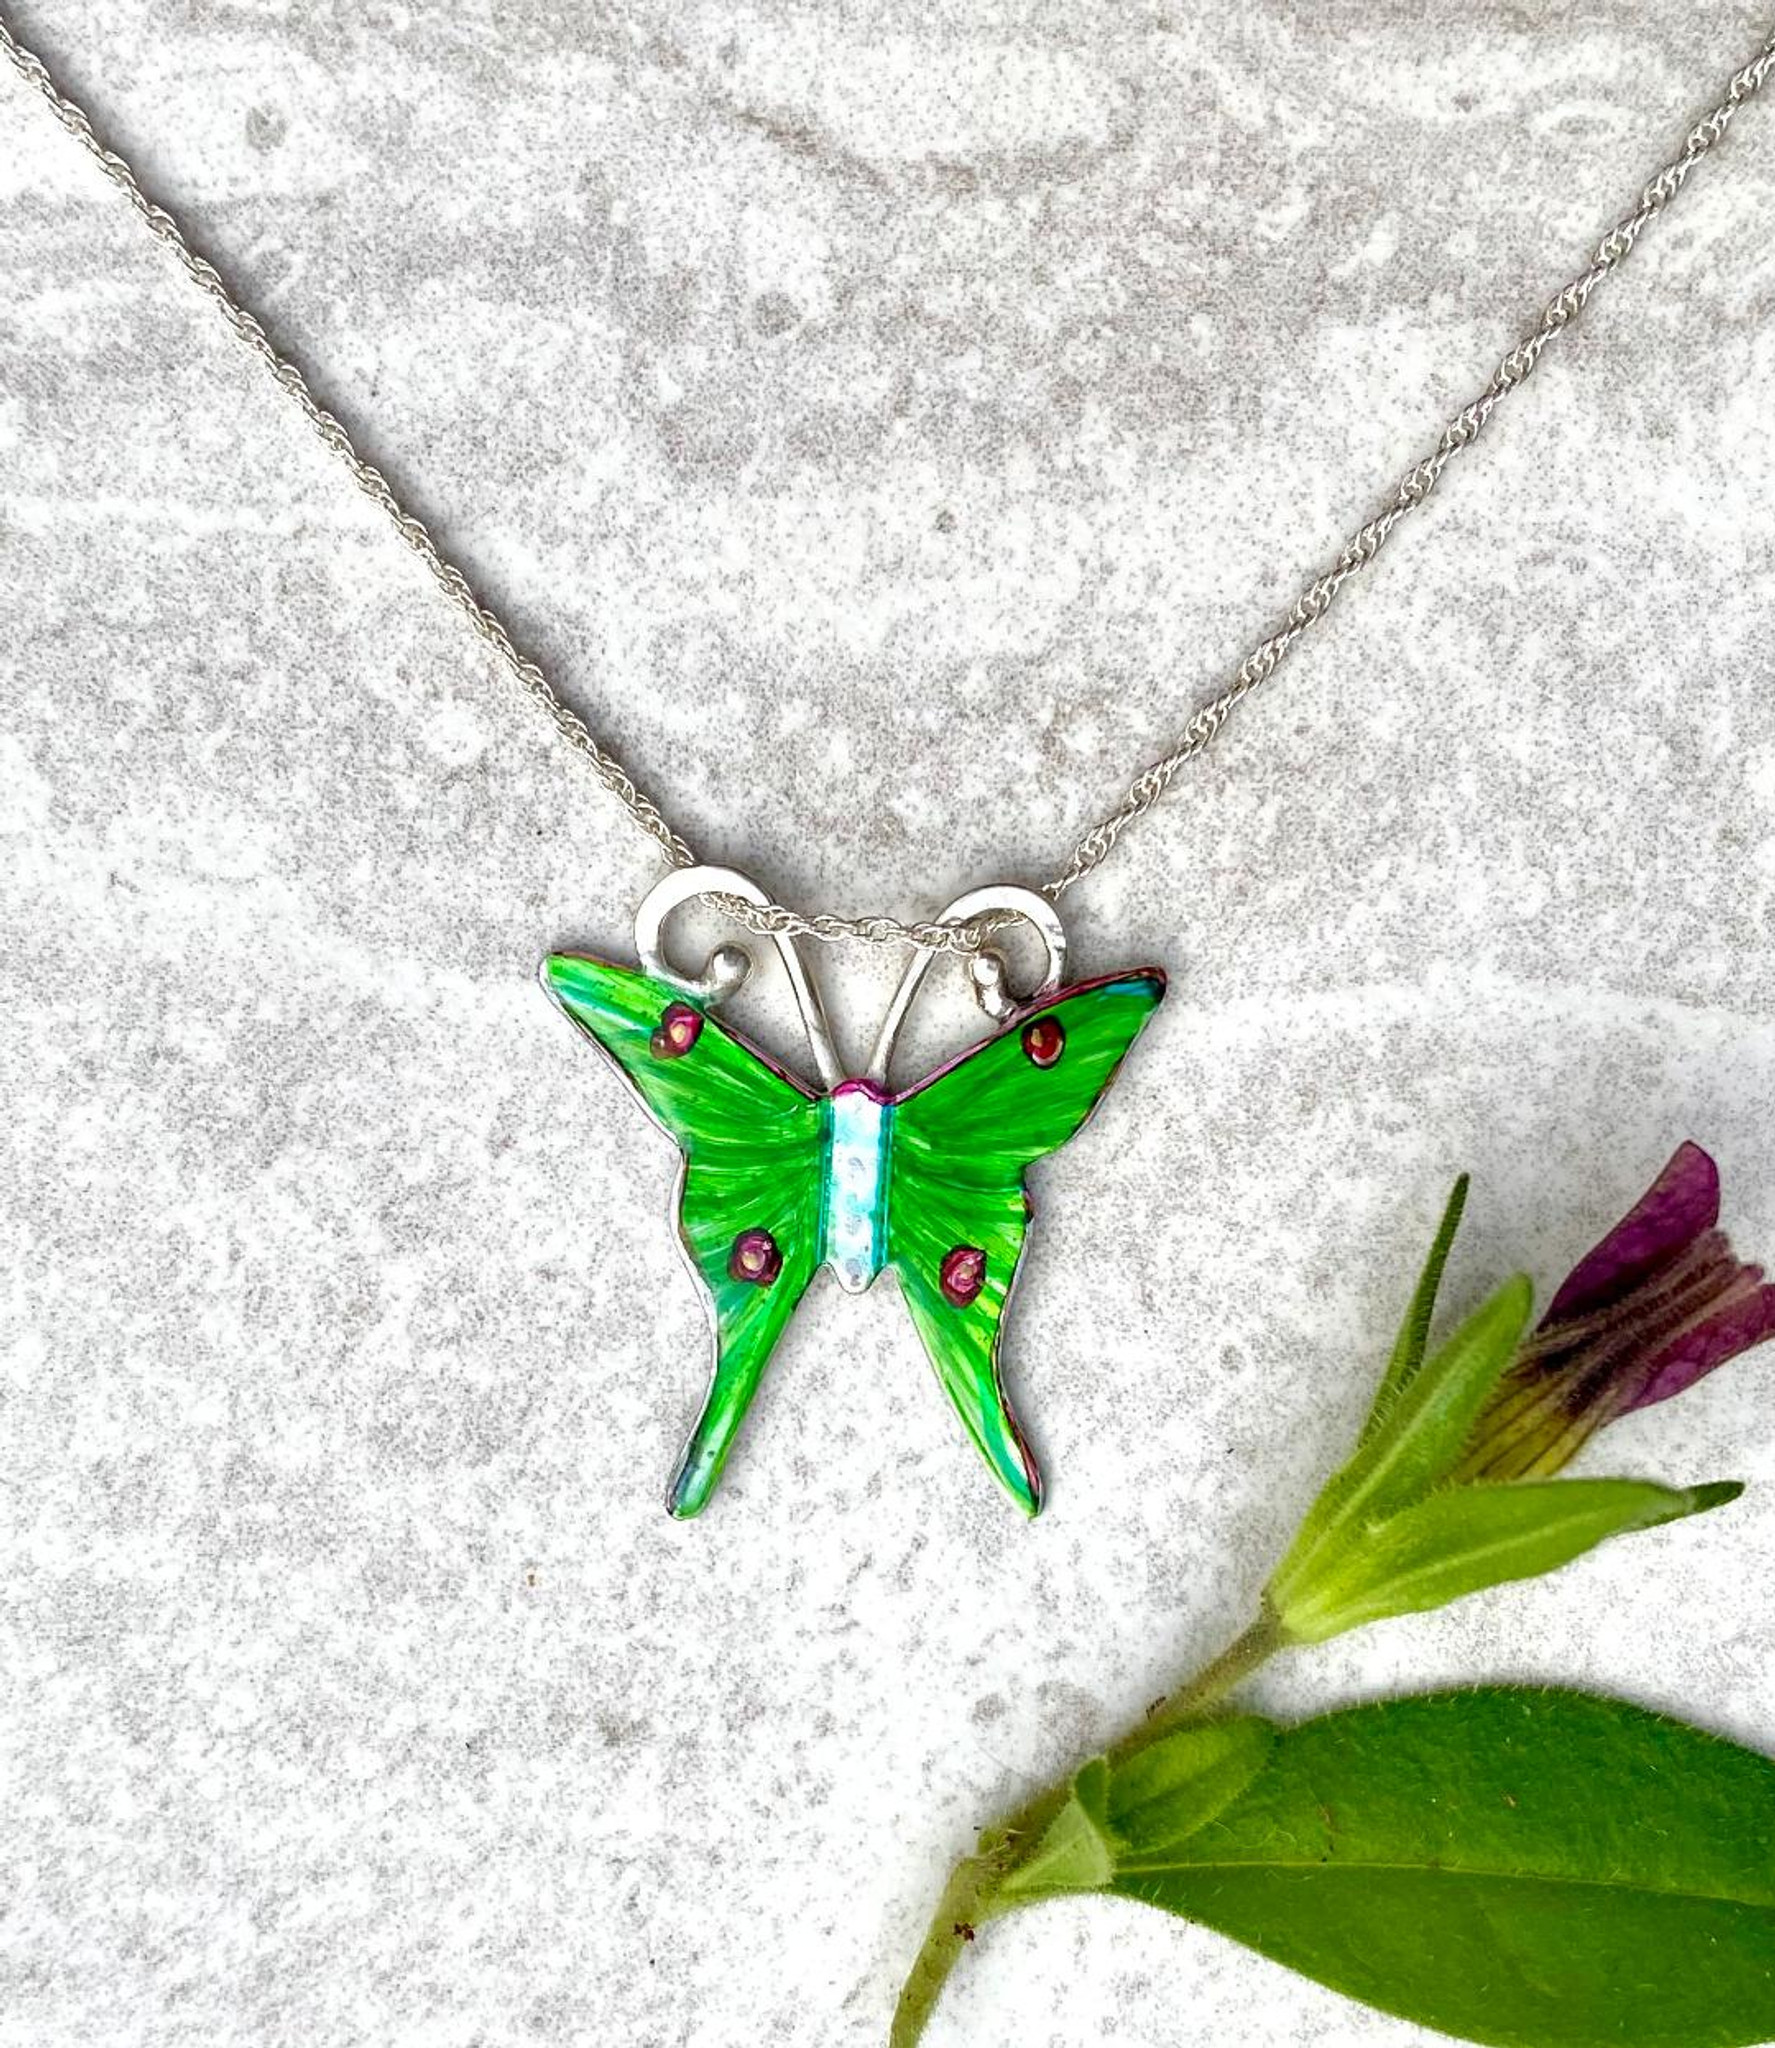 Tattered Luna Moth Necklace – Star Strung